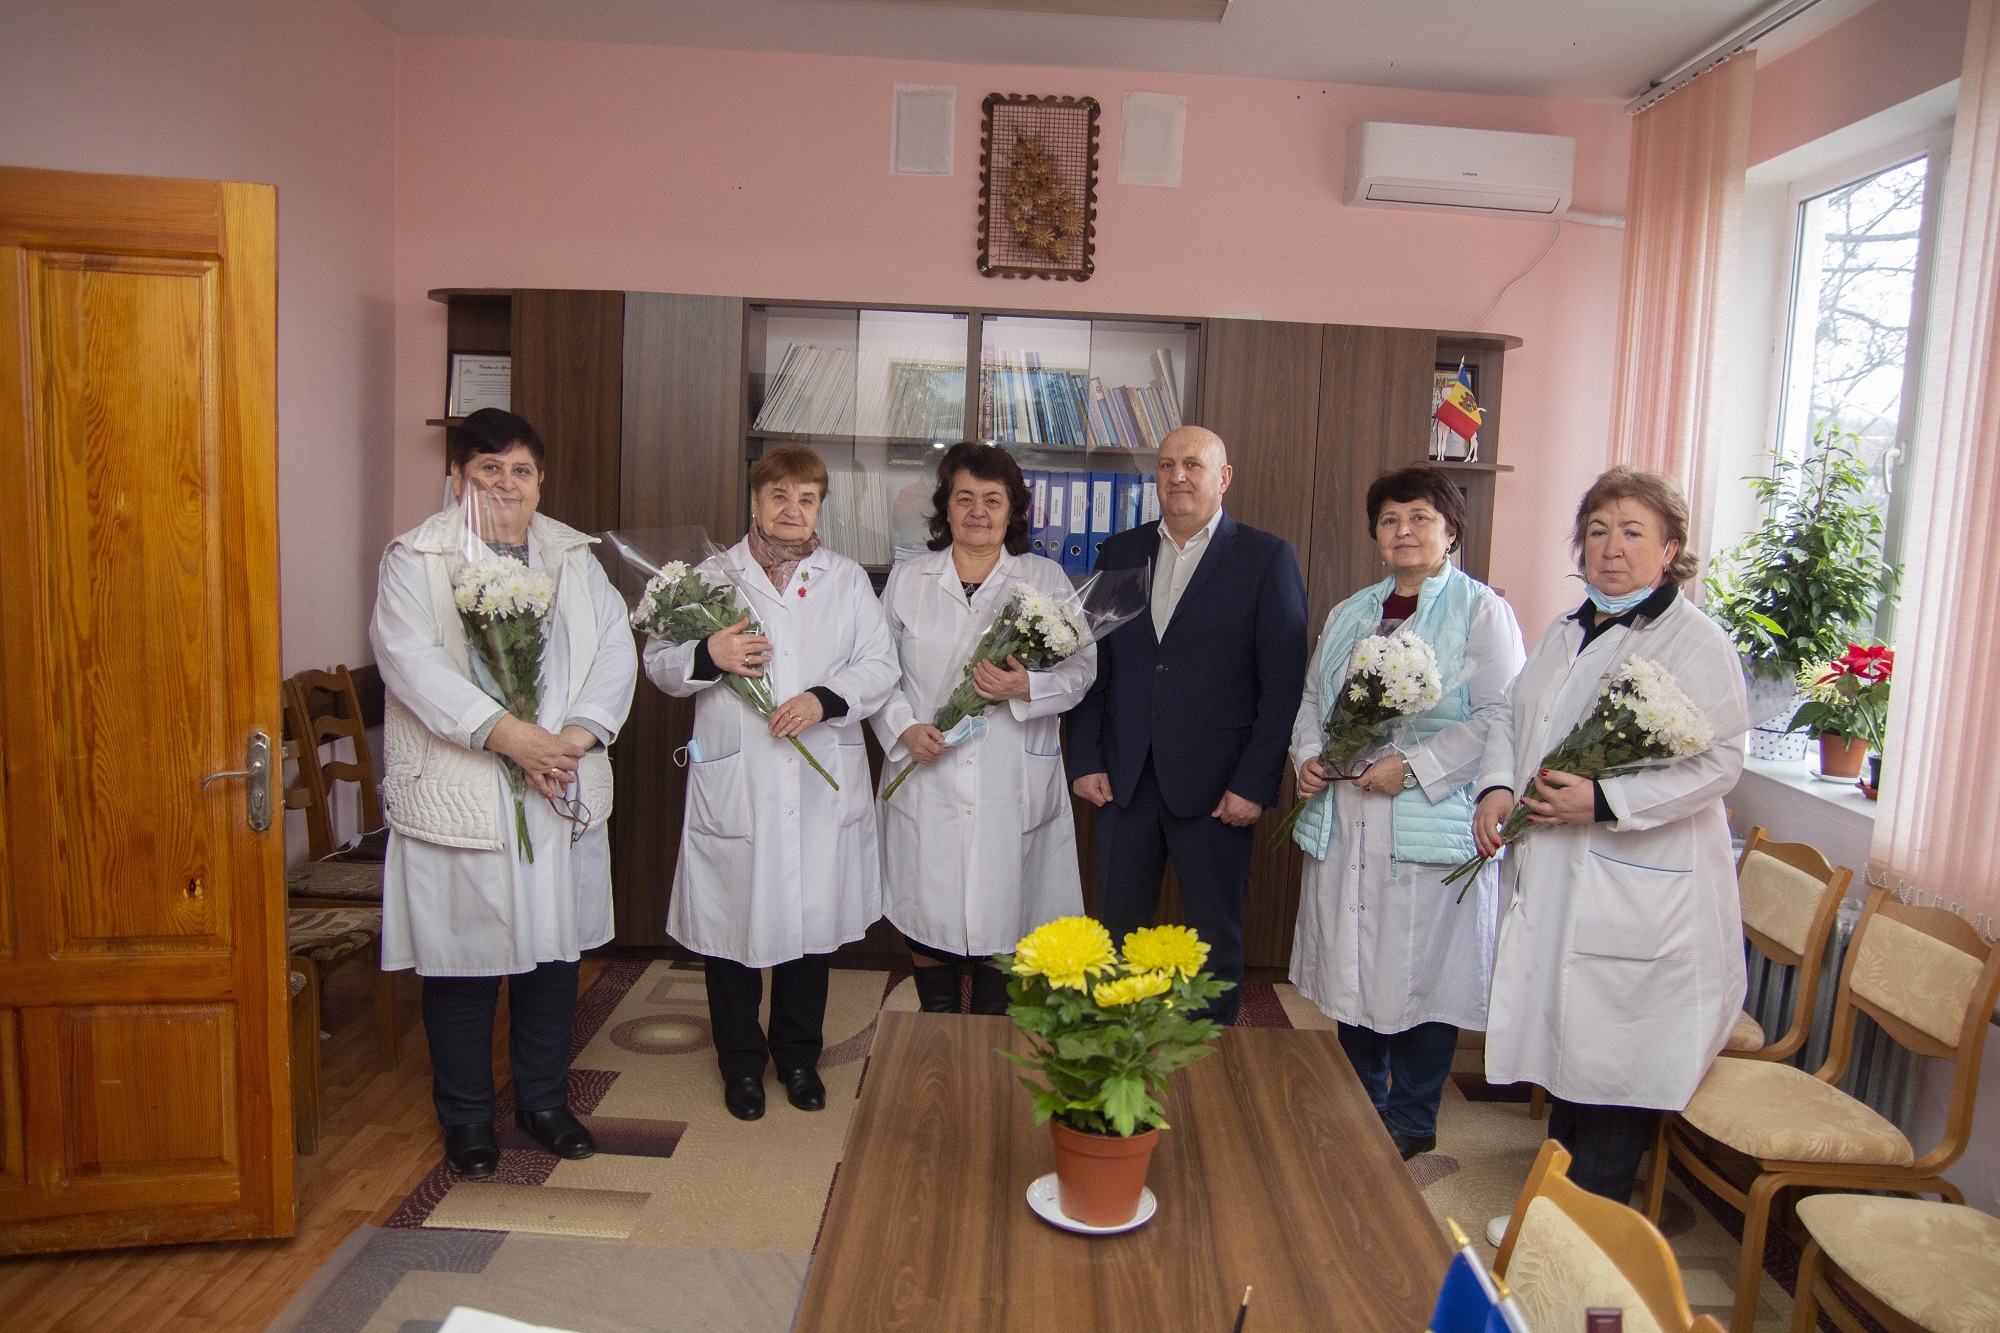 Președintele raionului, Vasile MĂRCUȚĂ, împreună cu angajații Consiliului raional Nisporeni, în ajunul sărbătorii de 8 martie ,, Ziua Internațională a Femeii” a dăruit flori și a felicitat,  frumoasele  doamne din domeniul sănătății.